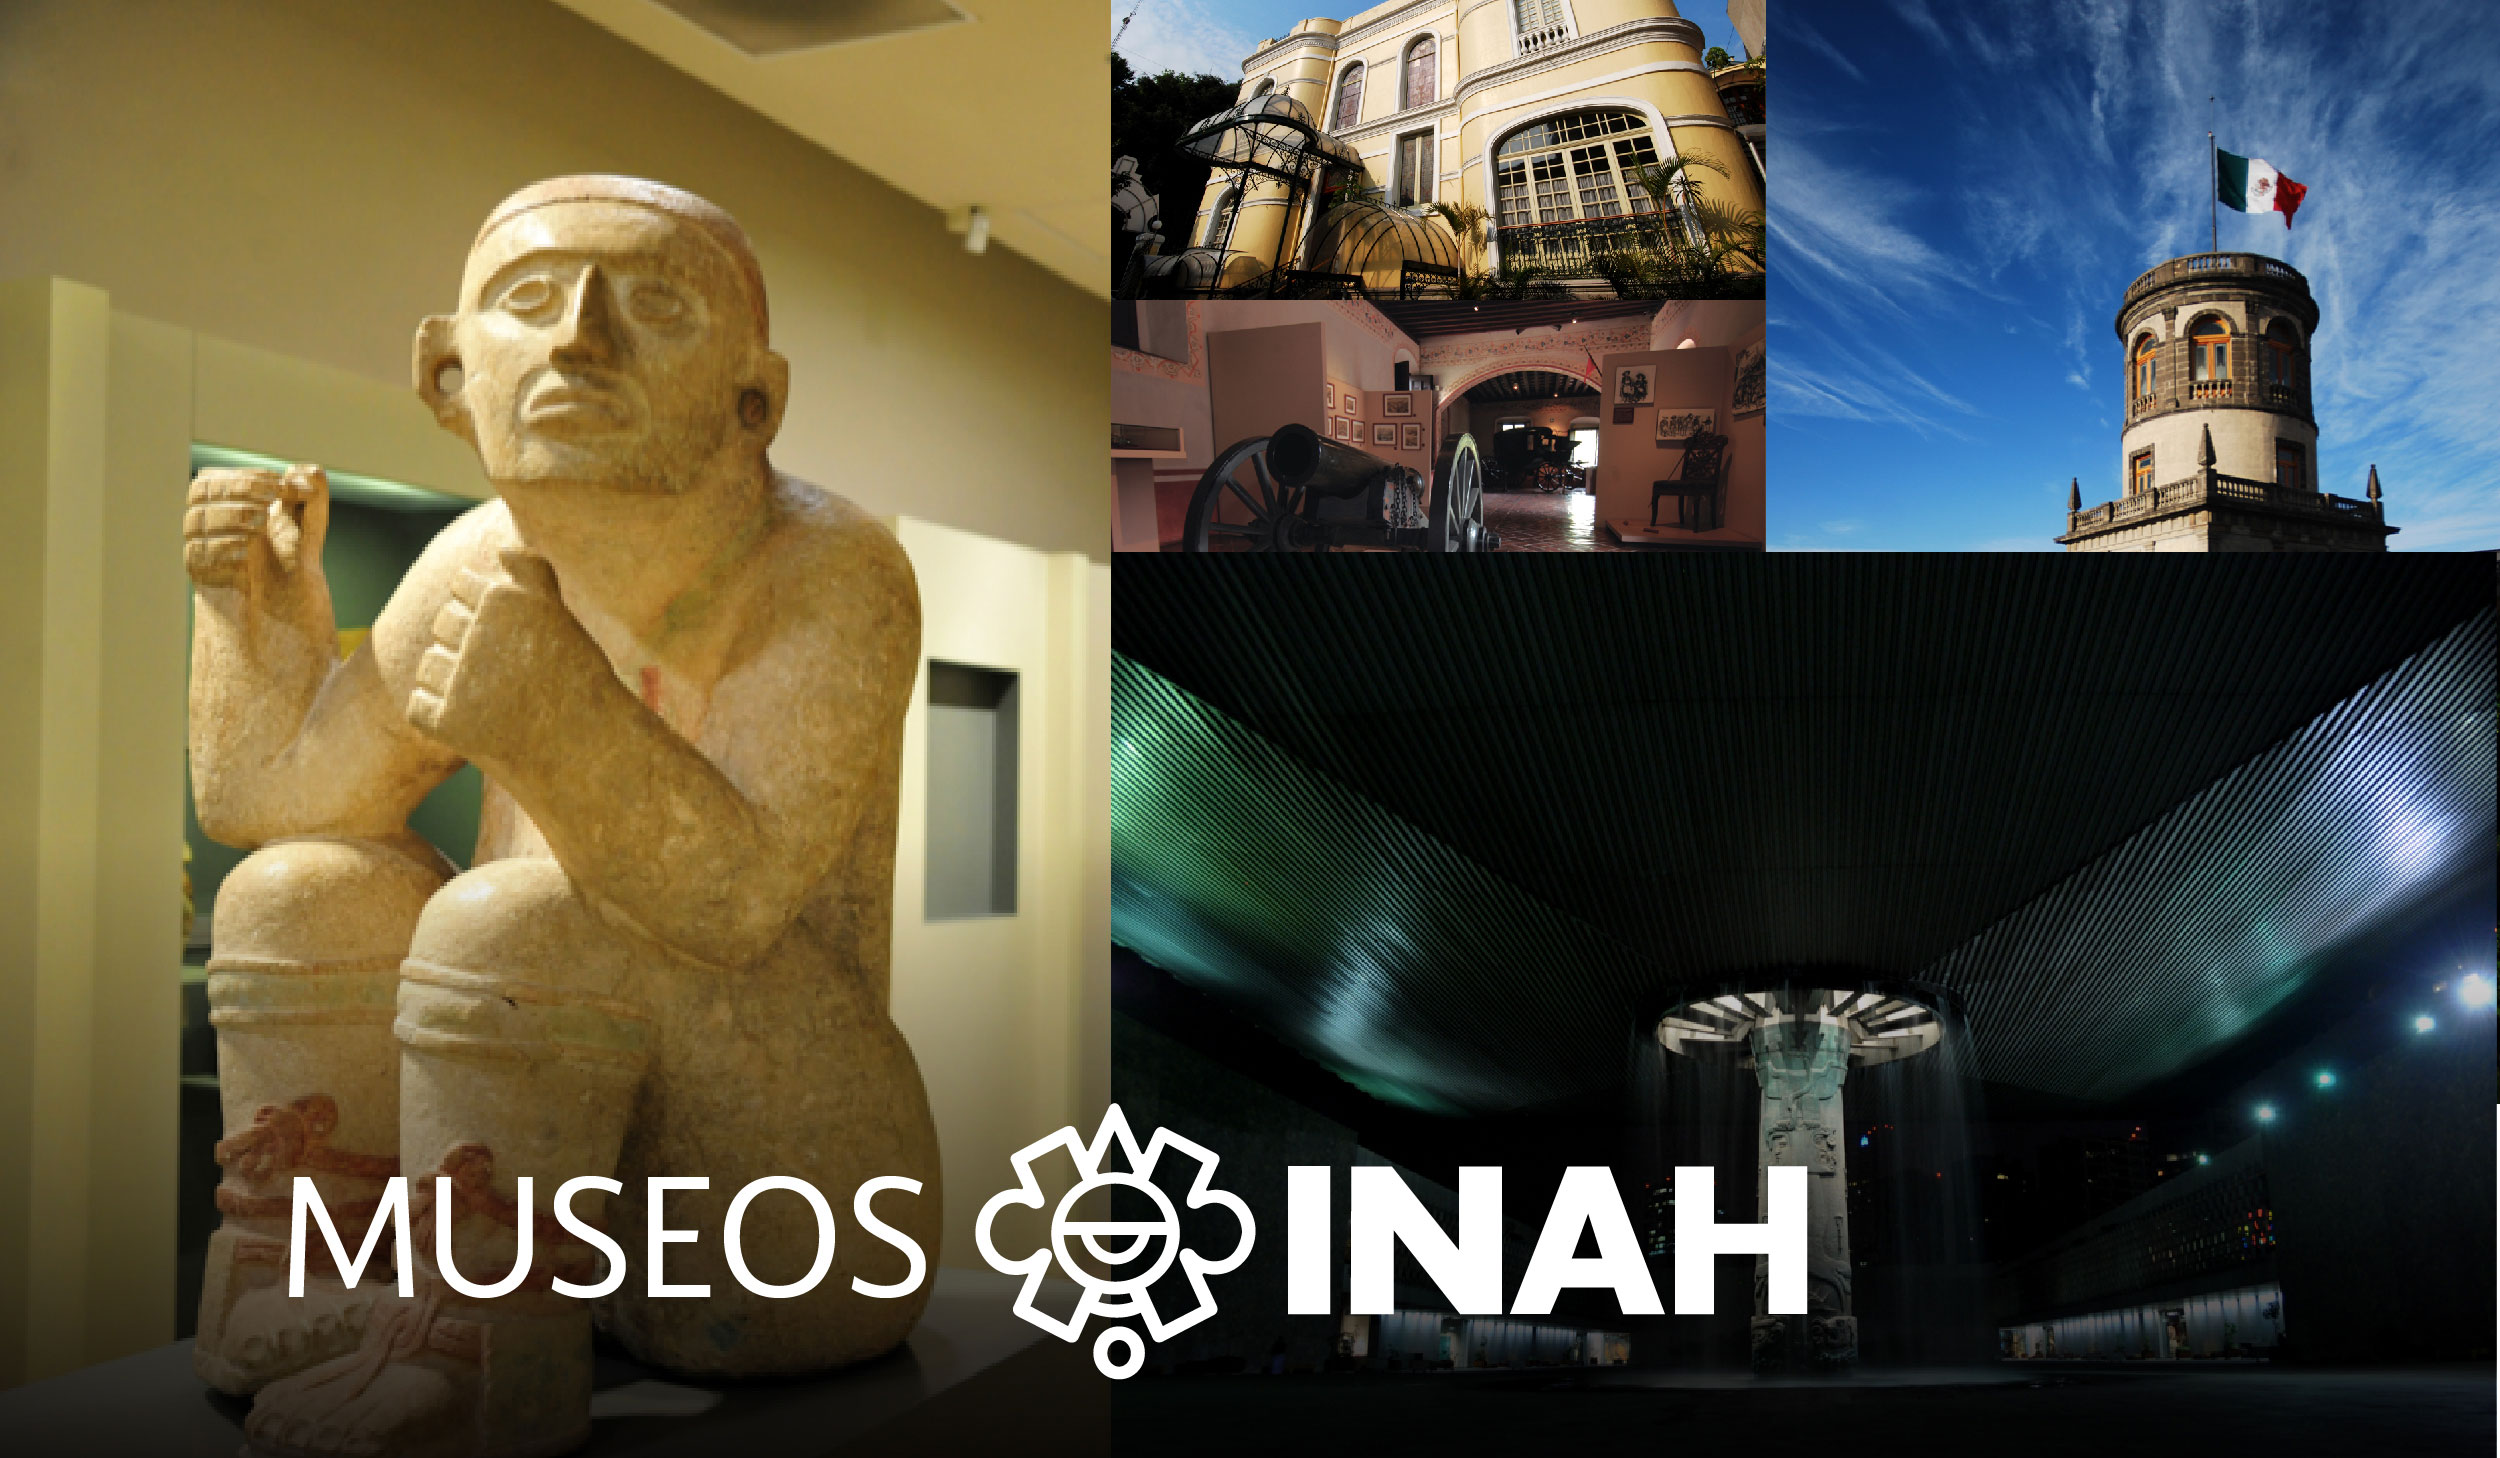 Red de Museos del INAH